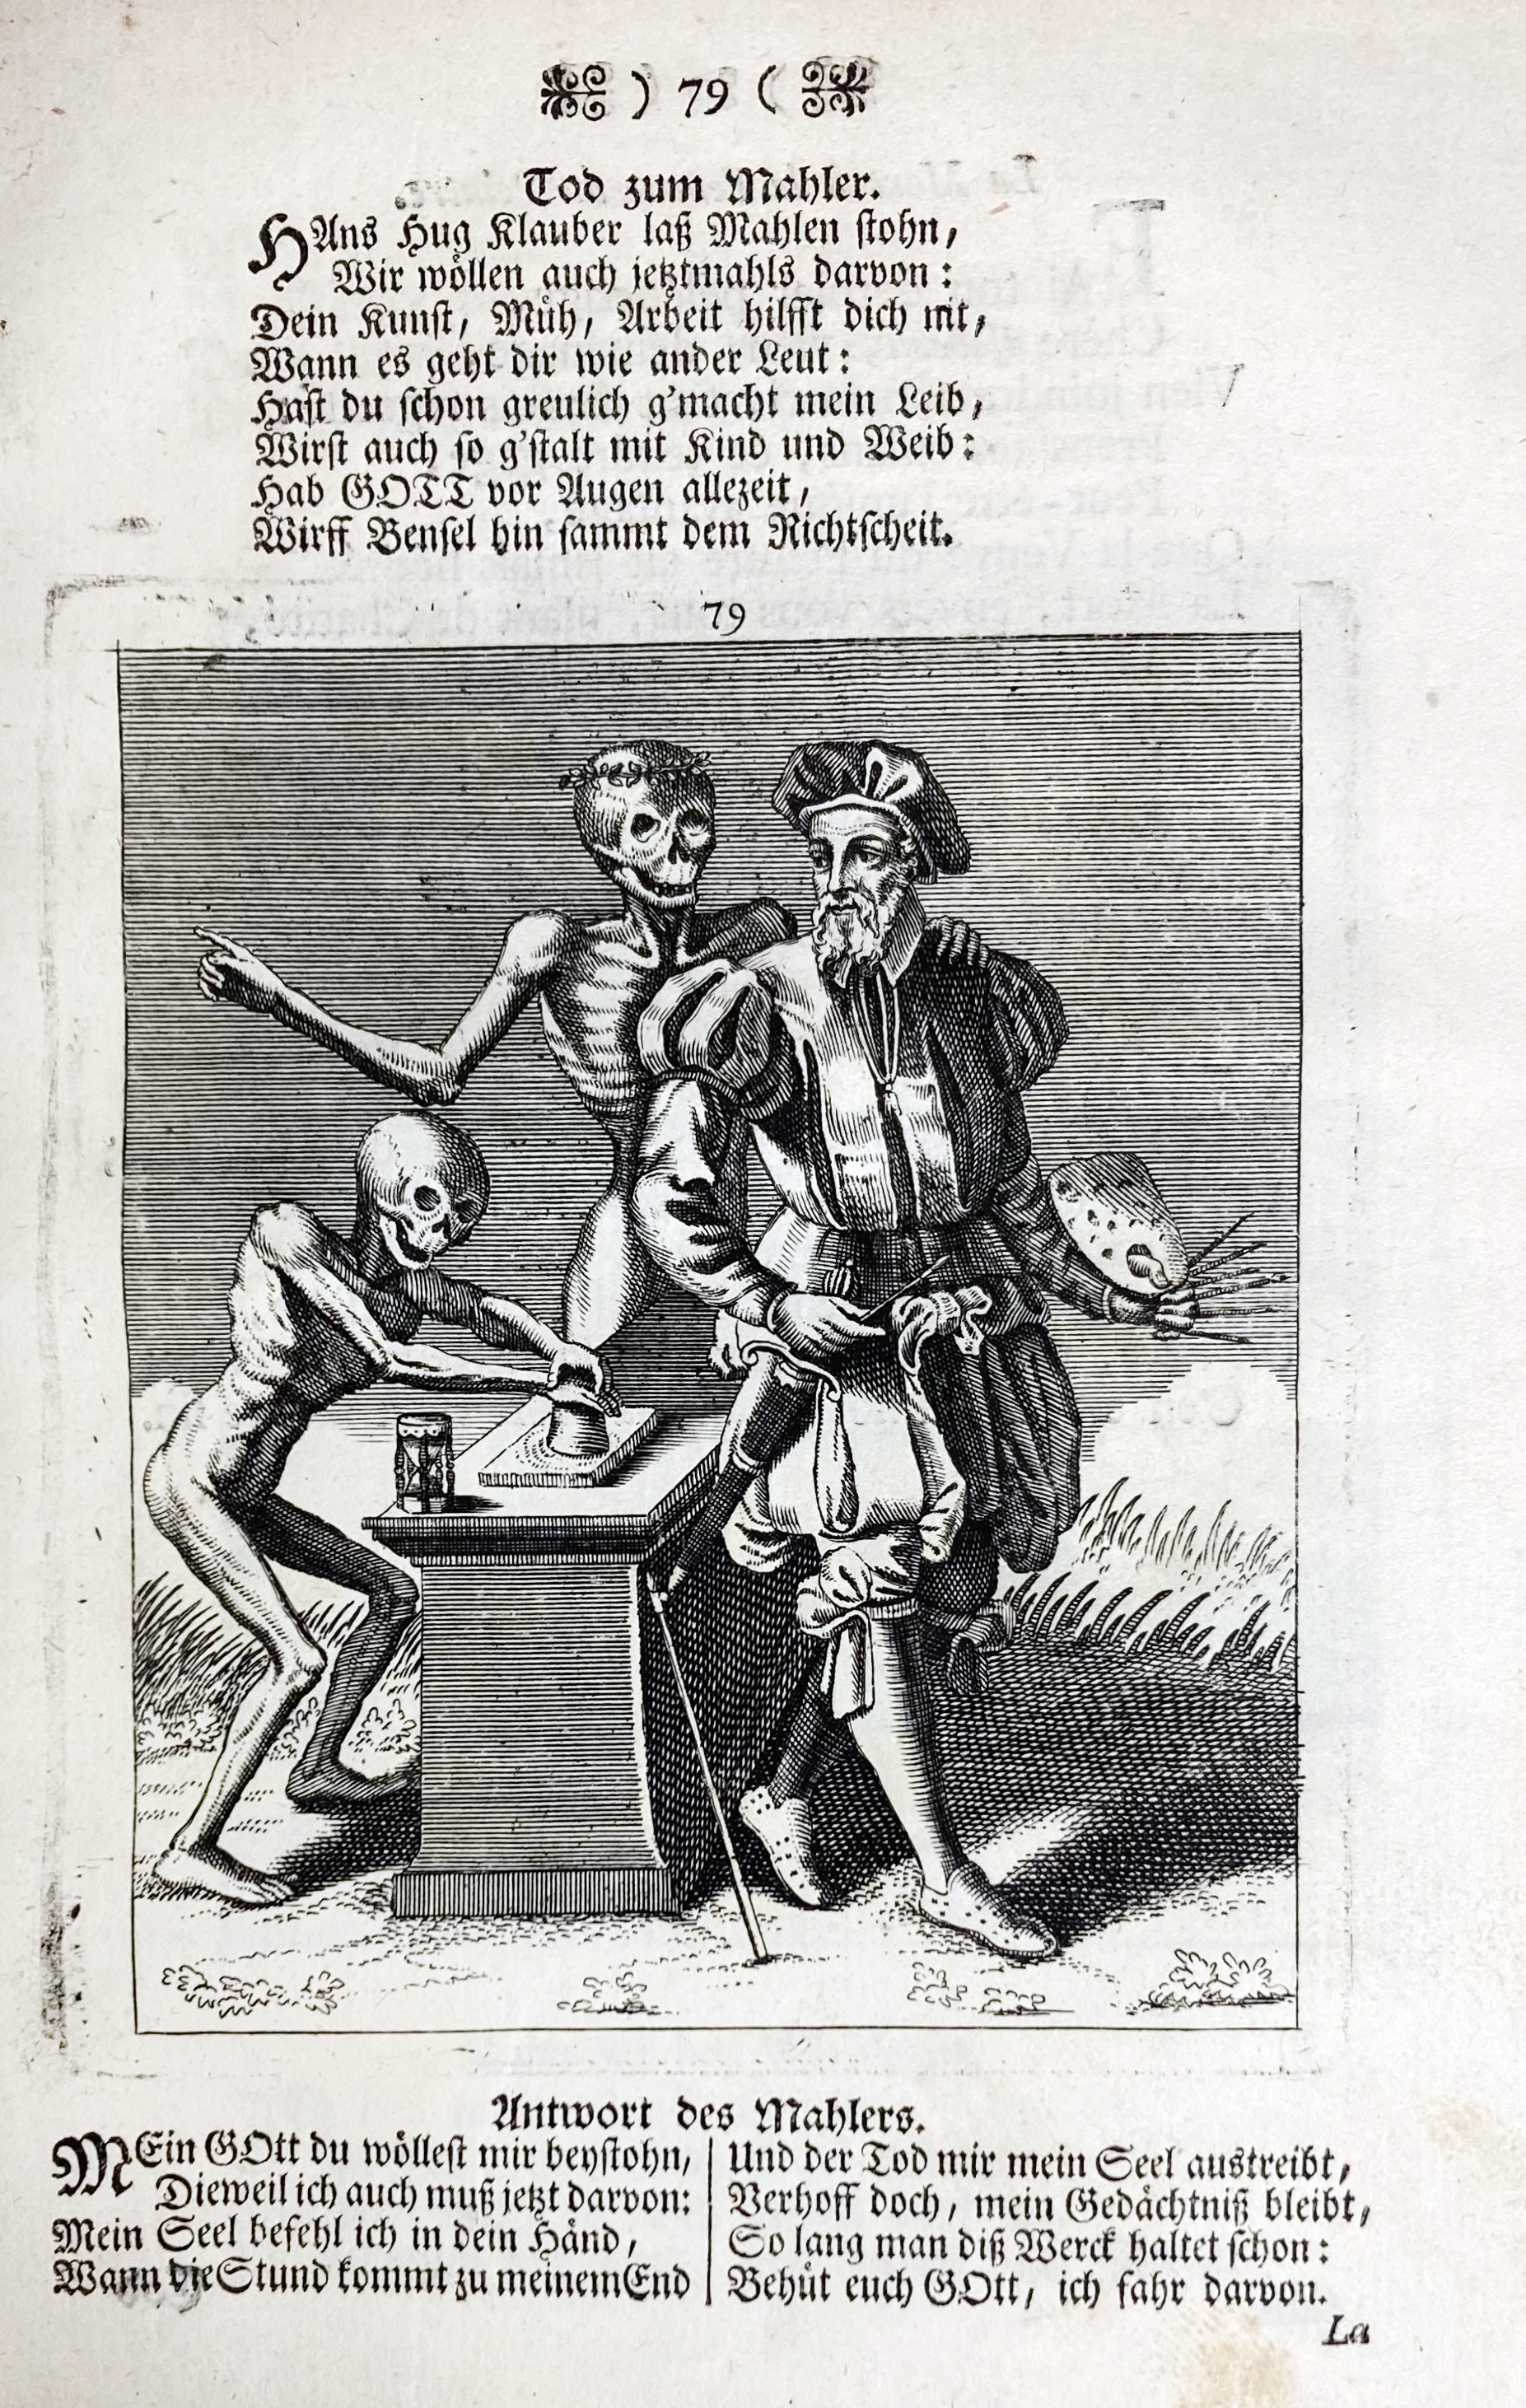 DANCE OF DEATH -- CHOVIN, J.A. Todten-Tanz, wie derselbe in der löbl - Image 4 of 5